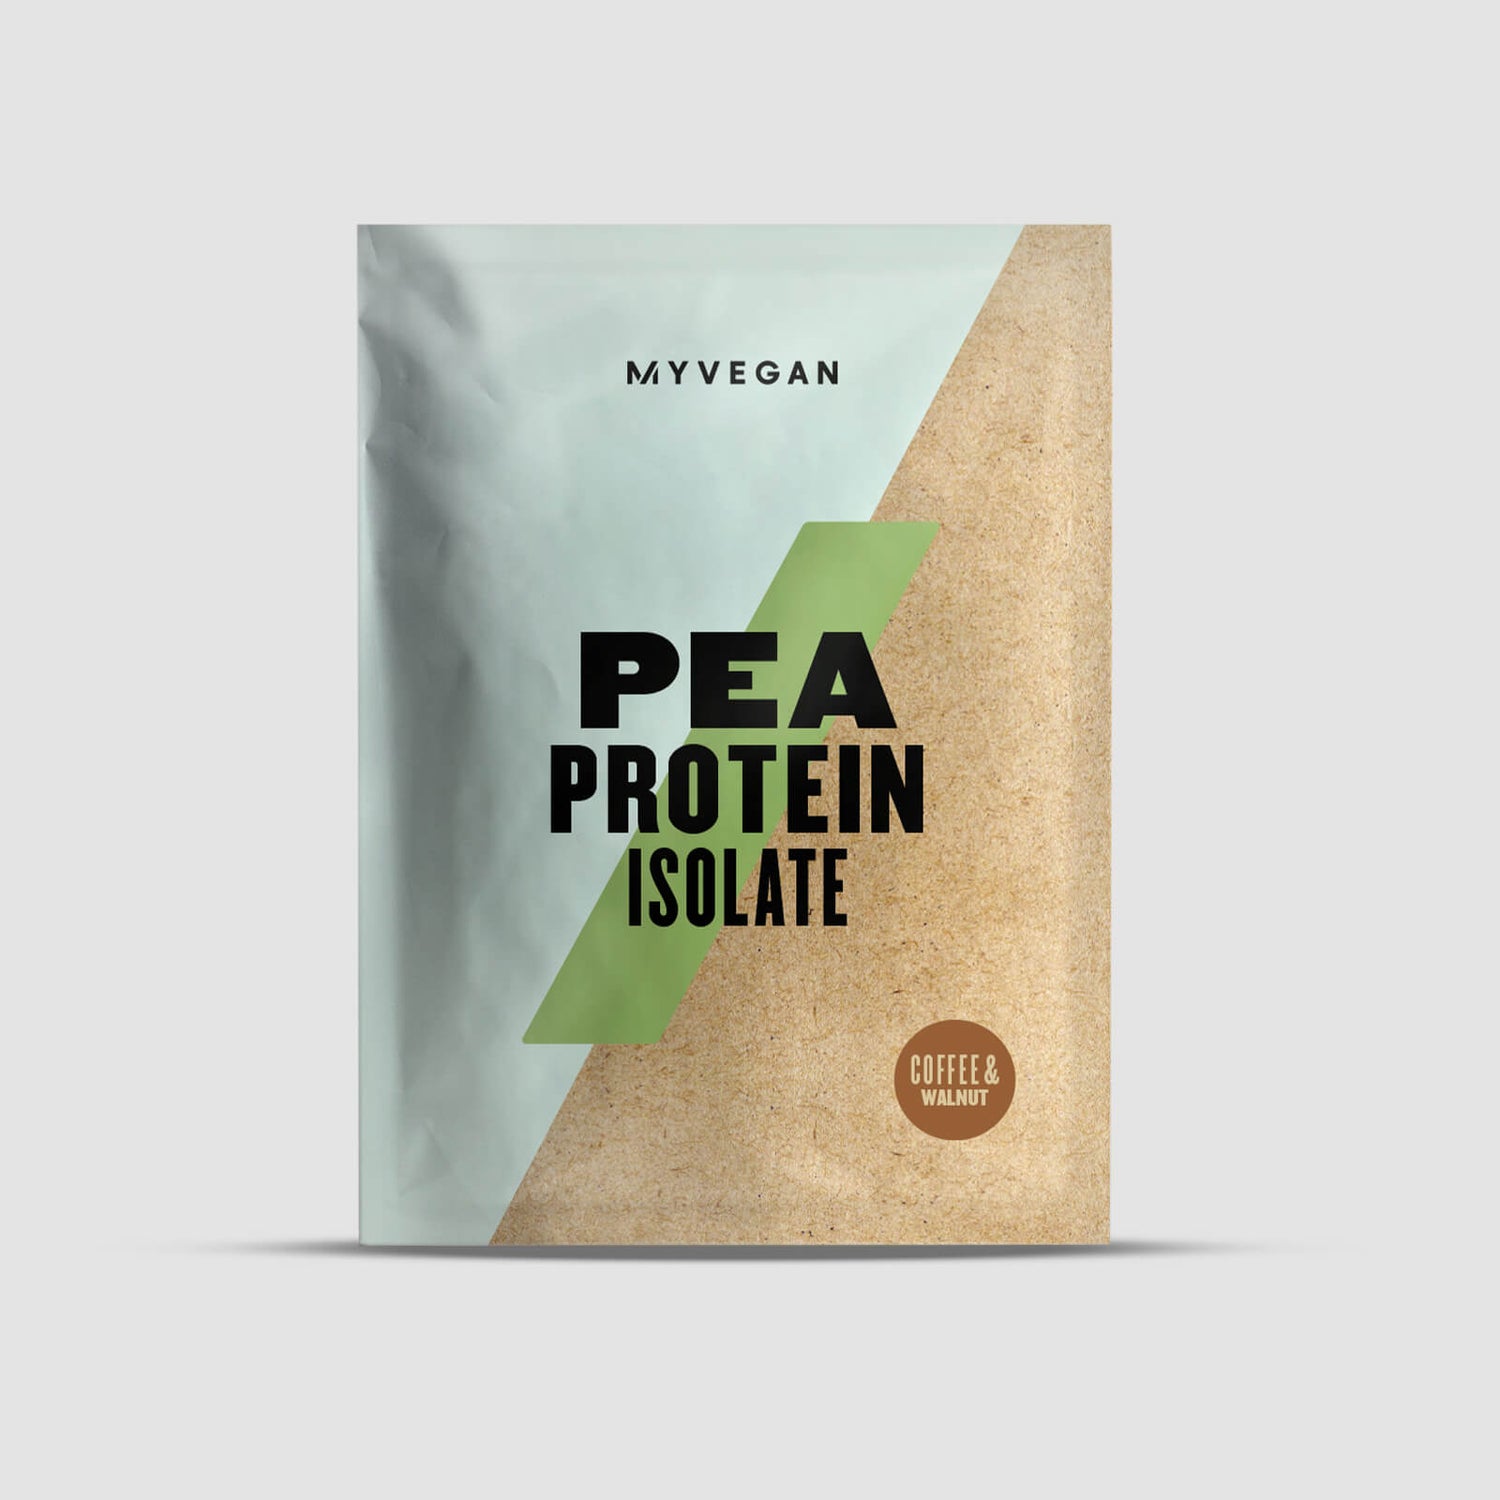 Myvegan Zirņu proteīnu izolāts - 30g - Coffee & Walnut